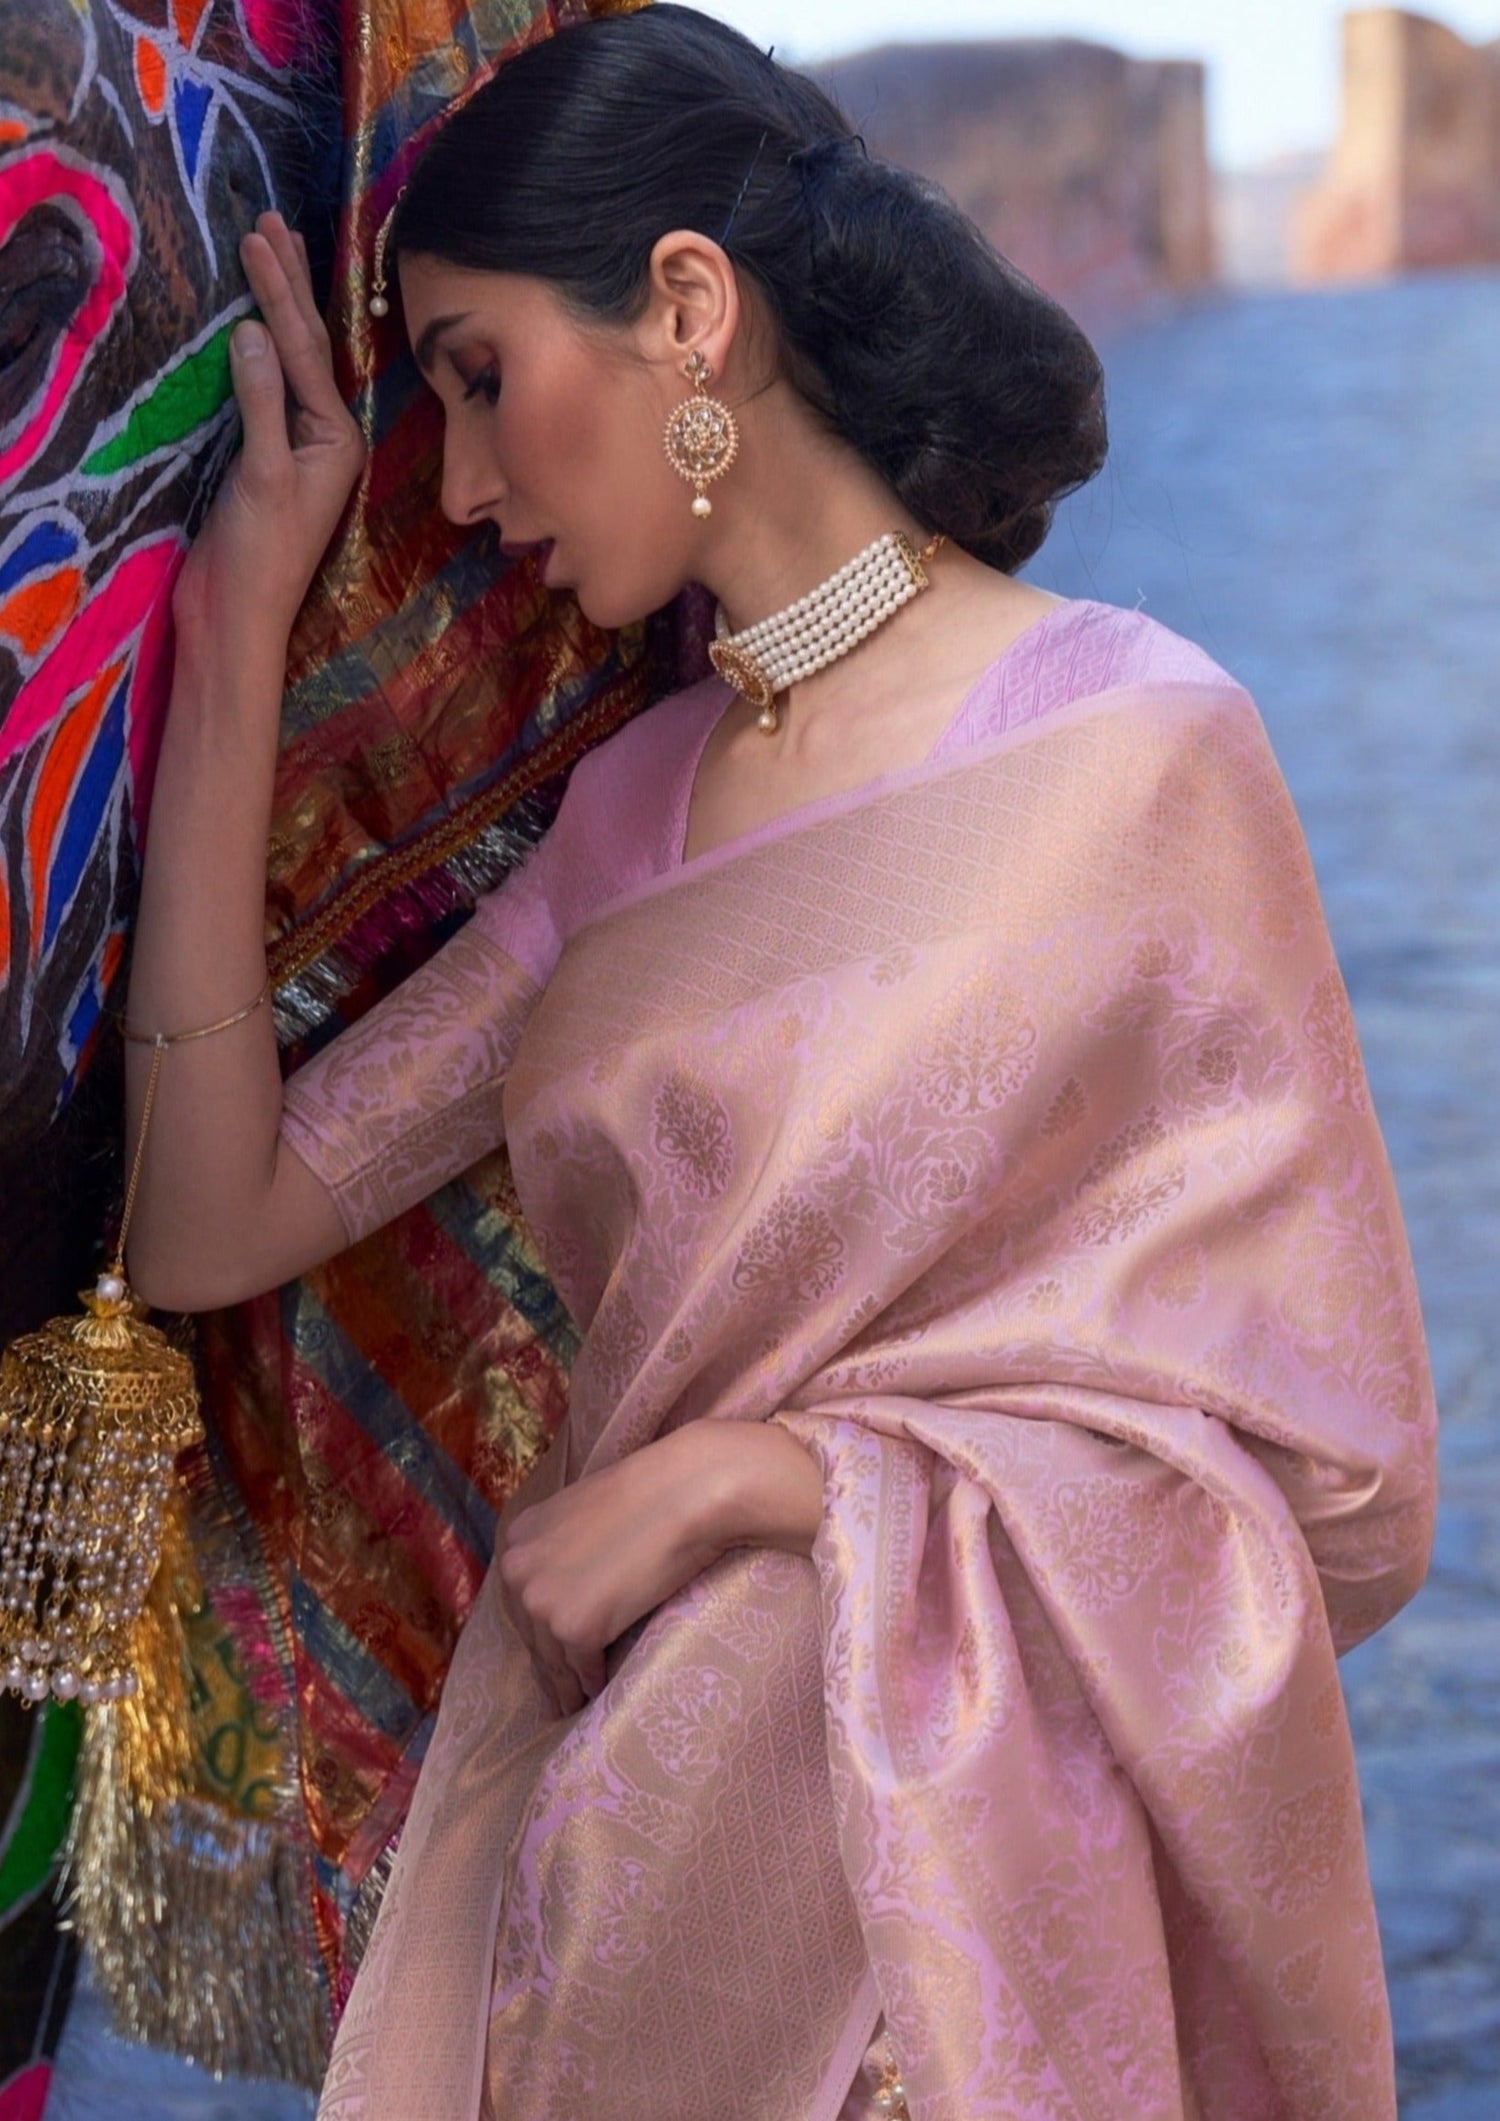 Light Pink Kanjivaram Silk Saree